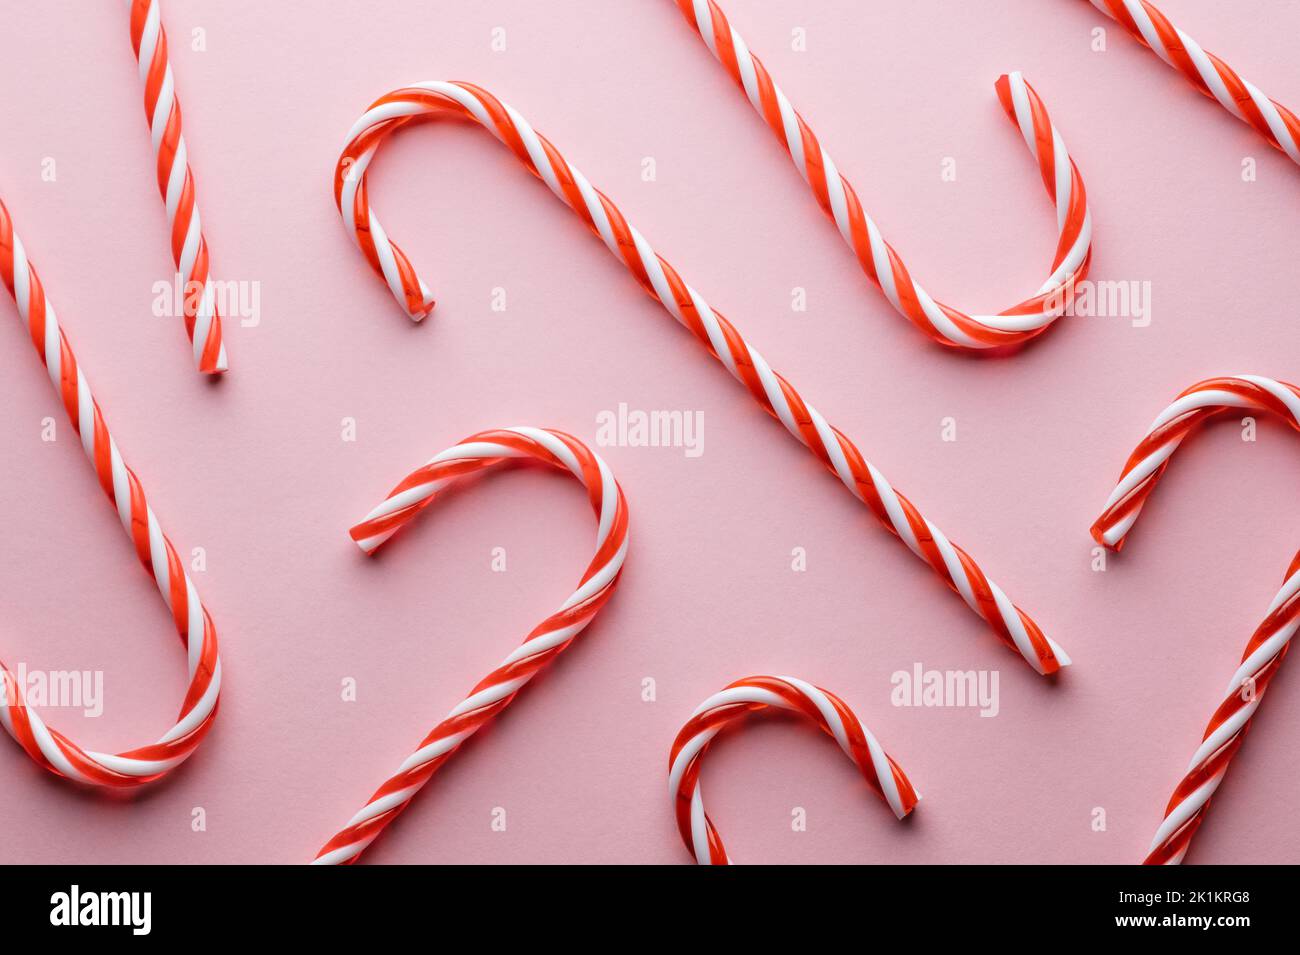 Modello di canna da zucchero a righe dure su sfondo rosa. Natale sfondo vacanze Foto Stock